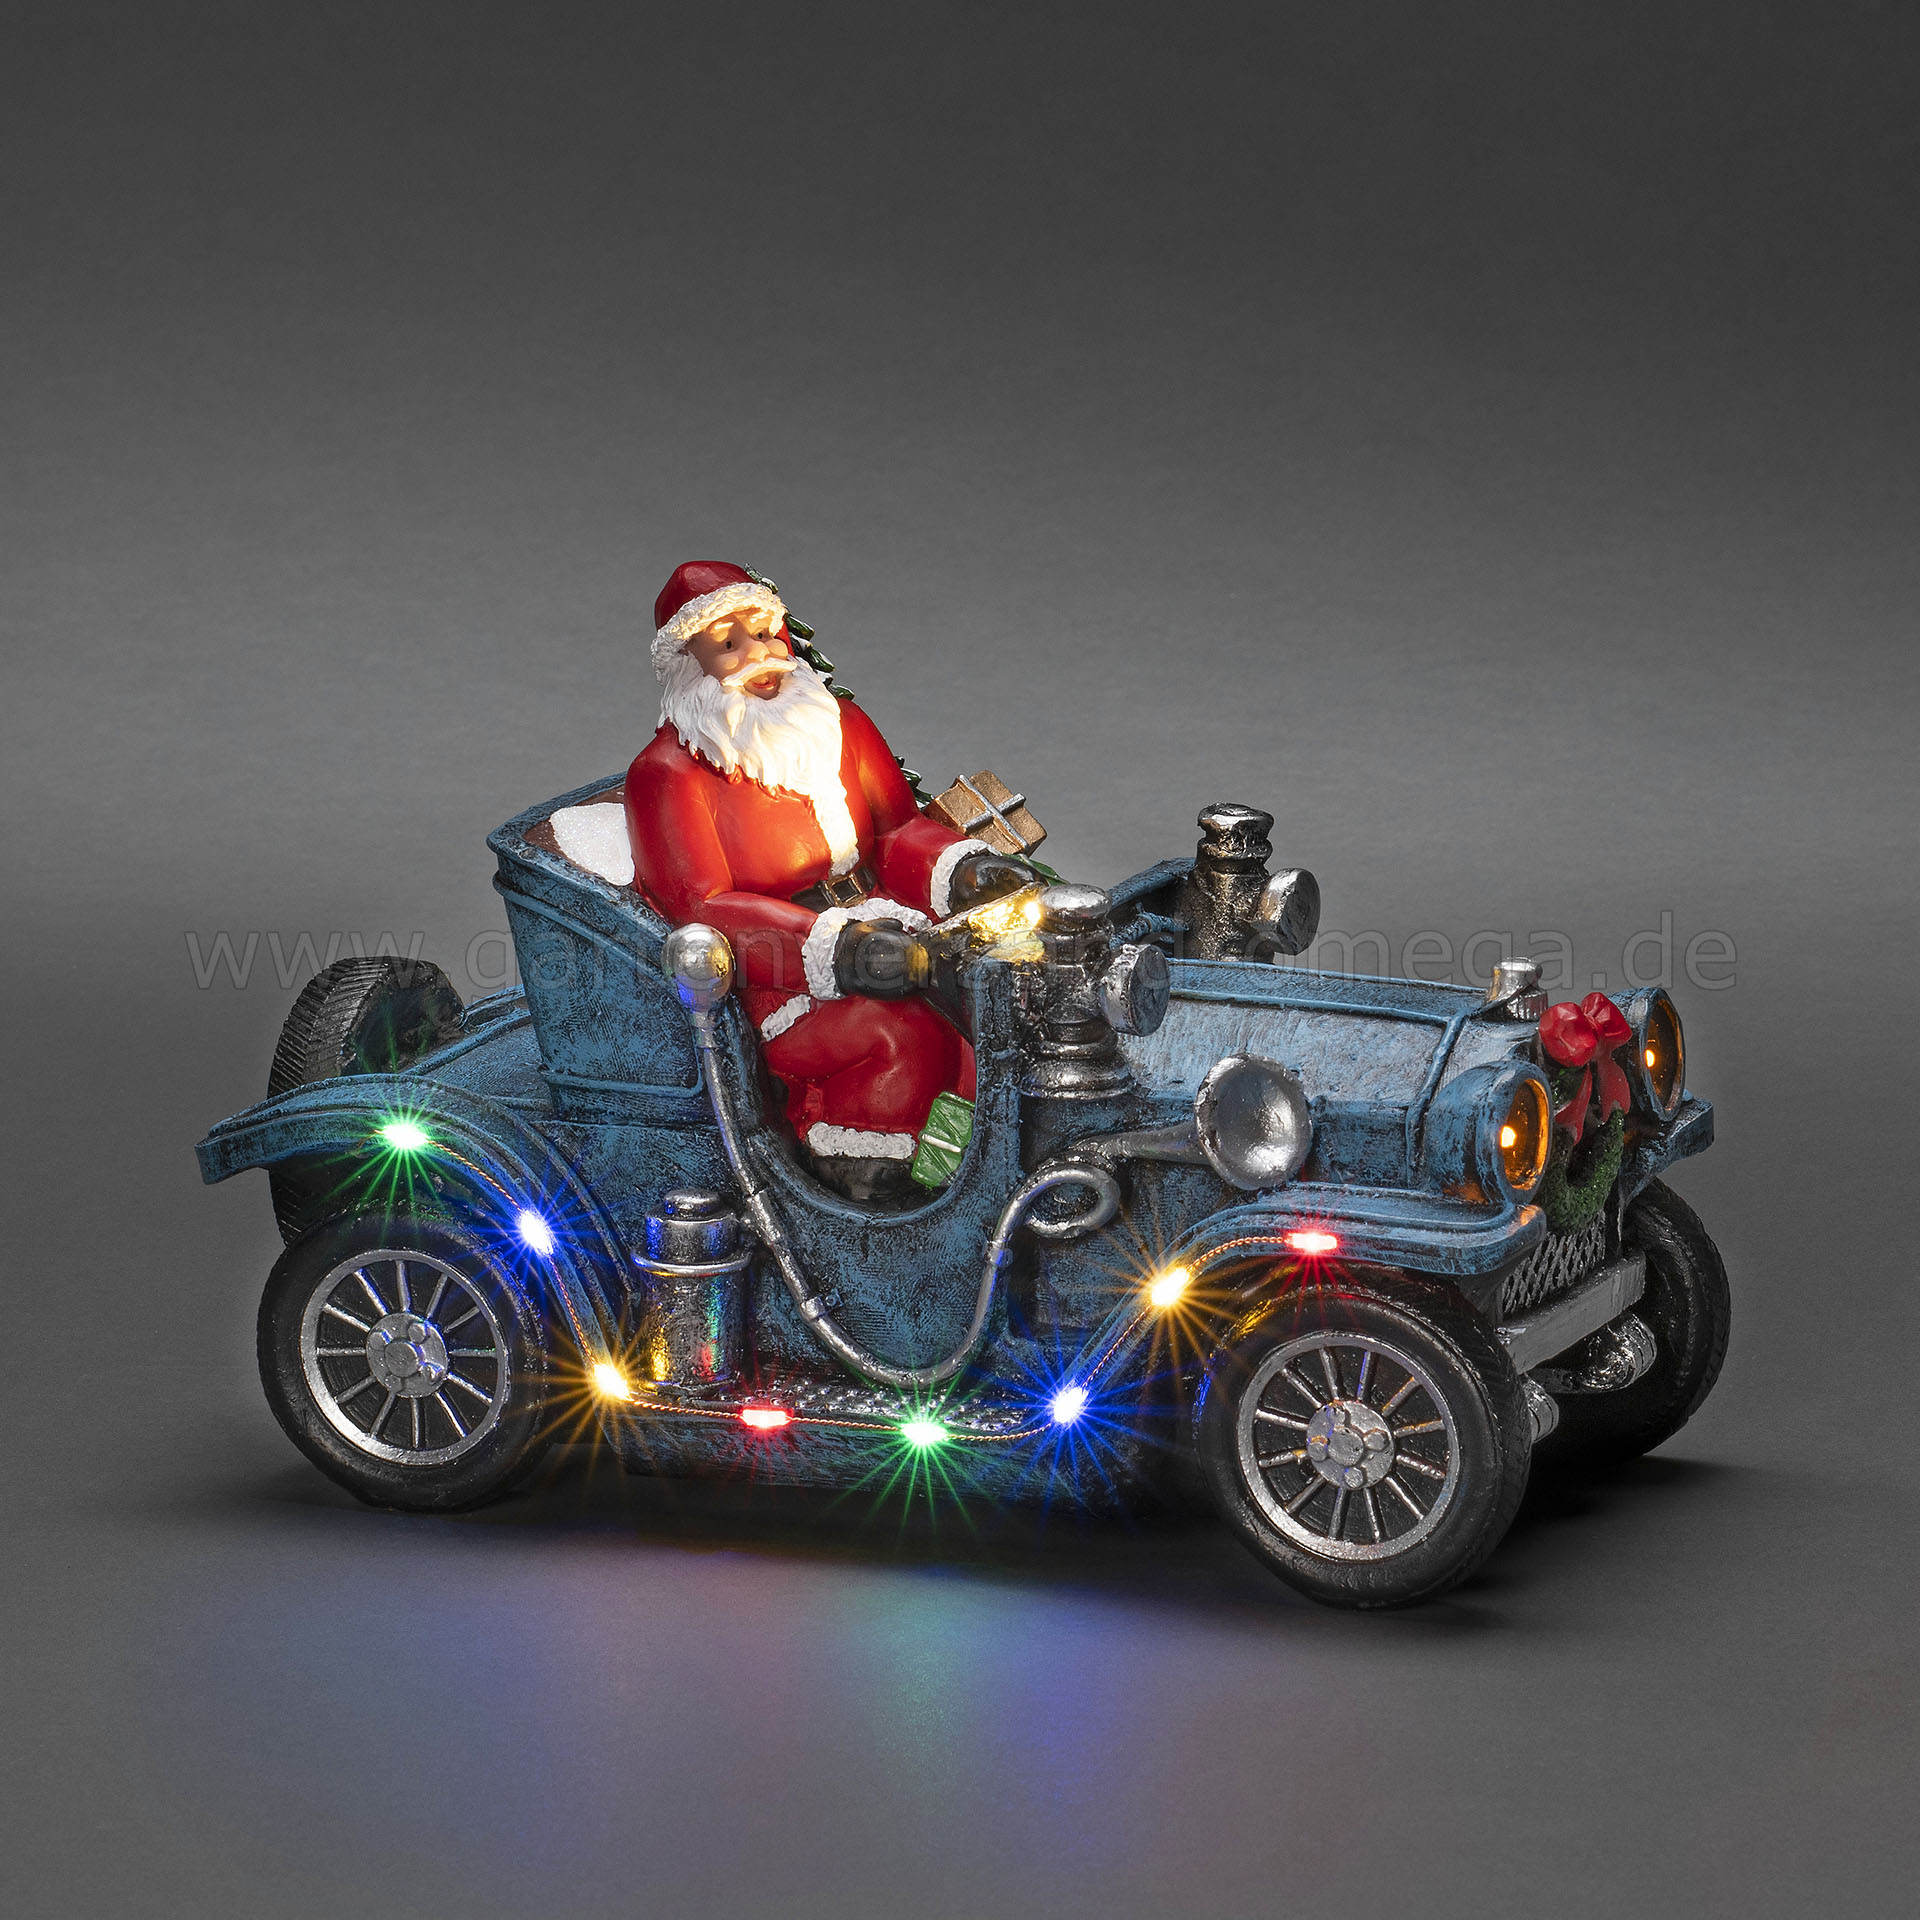 LED-Szenerie Weihnachtsmann Auto, Schreibtischdekoration im mit Deko-Auto LED-Beleuchtung mit Weihnachtsmann, Weihnachtsmann, LED Auto - Auto LED-Figur Auto Weihnachtsmann, Oldtimer Weihnachtsdeko Weihnachten